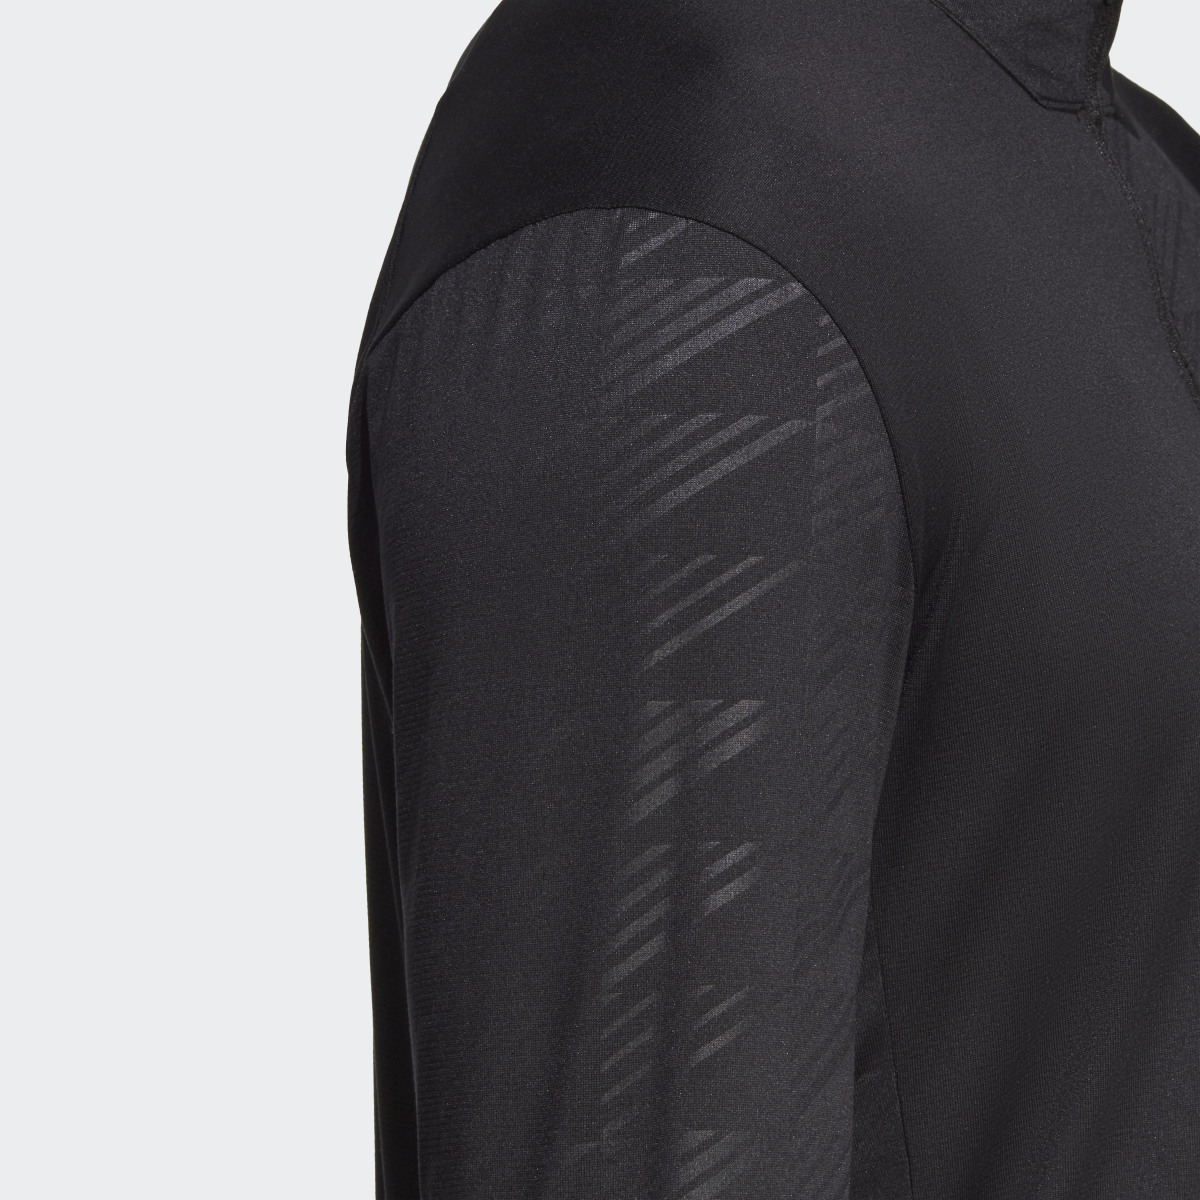 Adidas Terrex Multi Half-Zip Long Sleeve Tee. 9